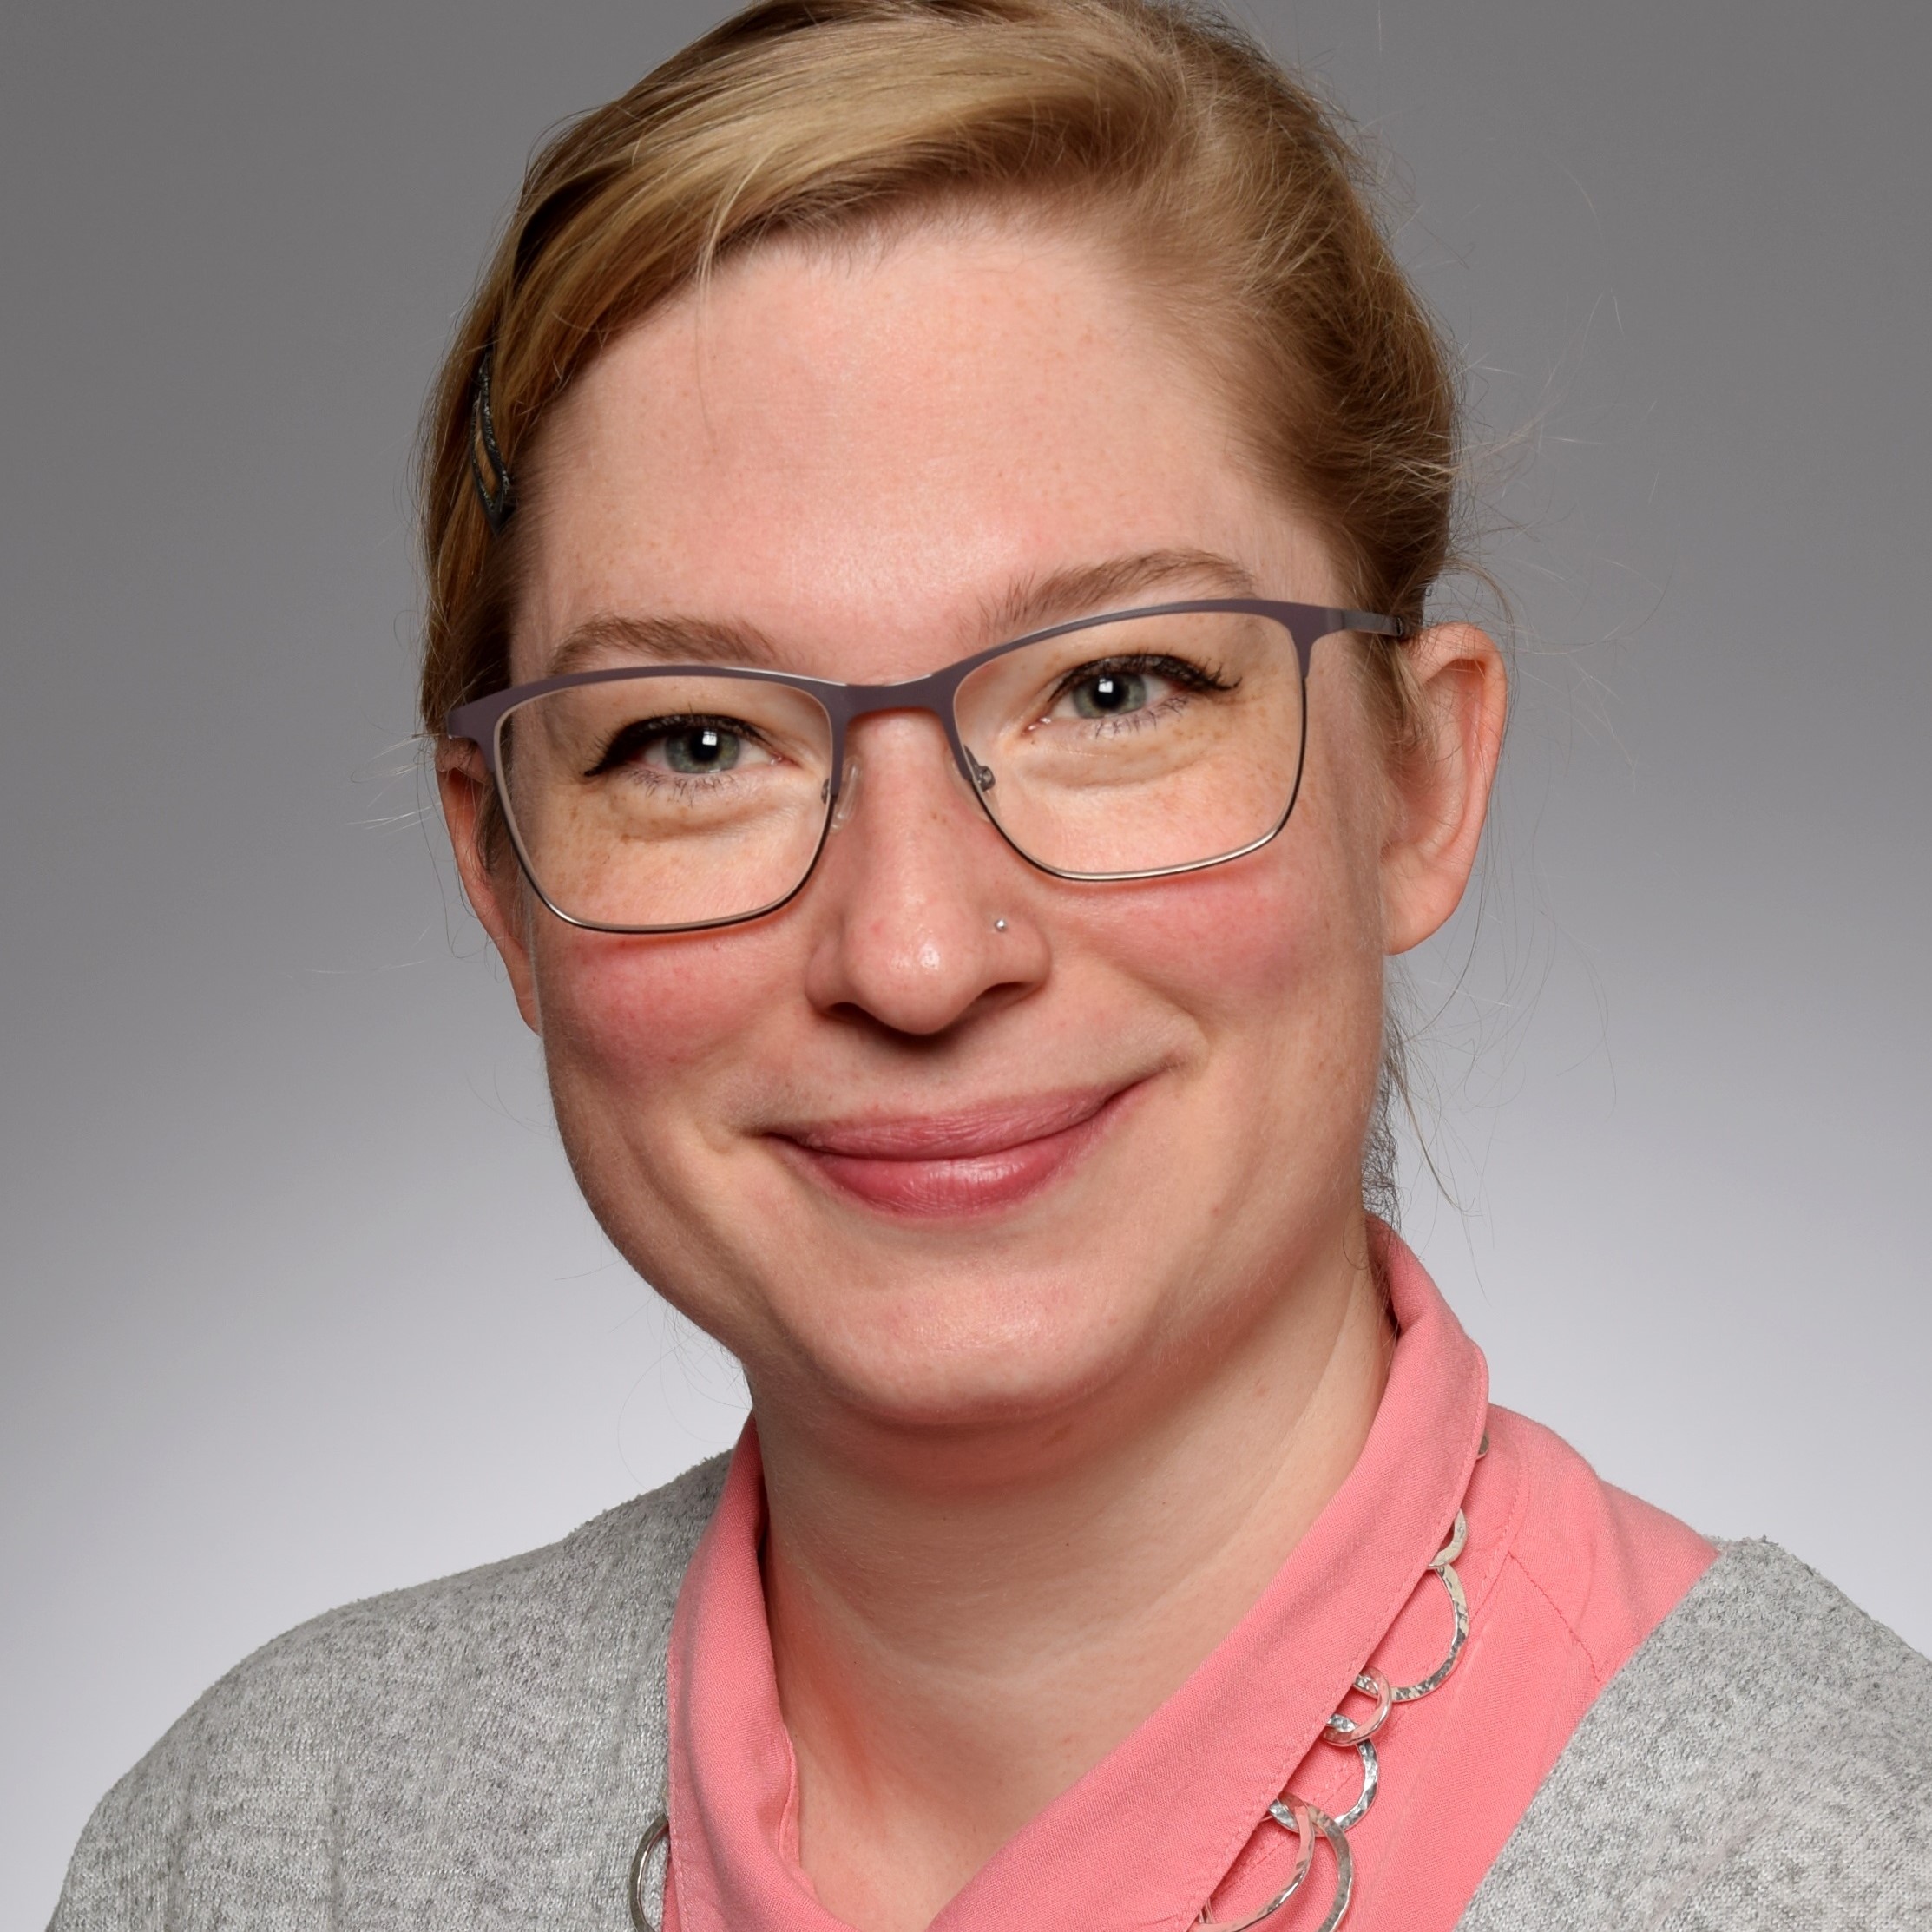 Caroline Farber wird per August 2019 Prorektorin an der Kantonsschule Luzern